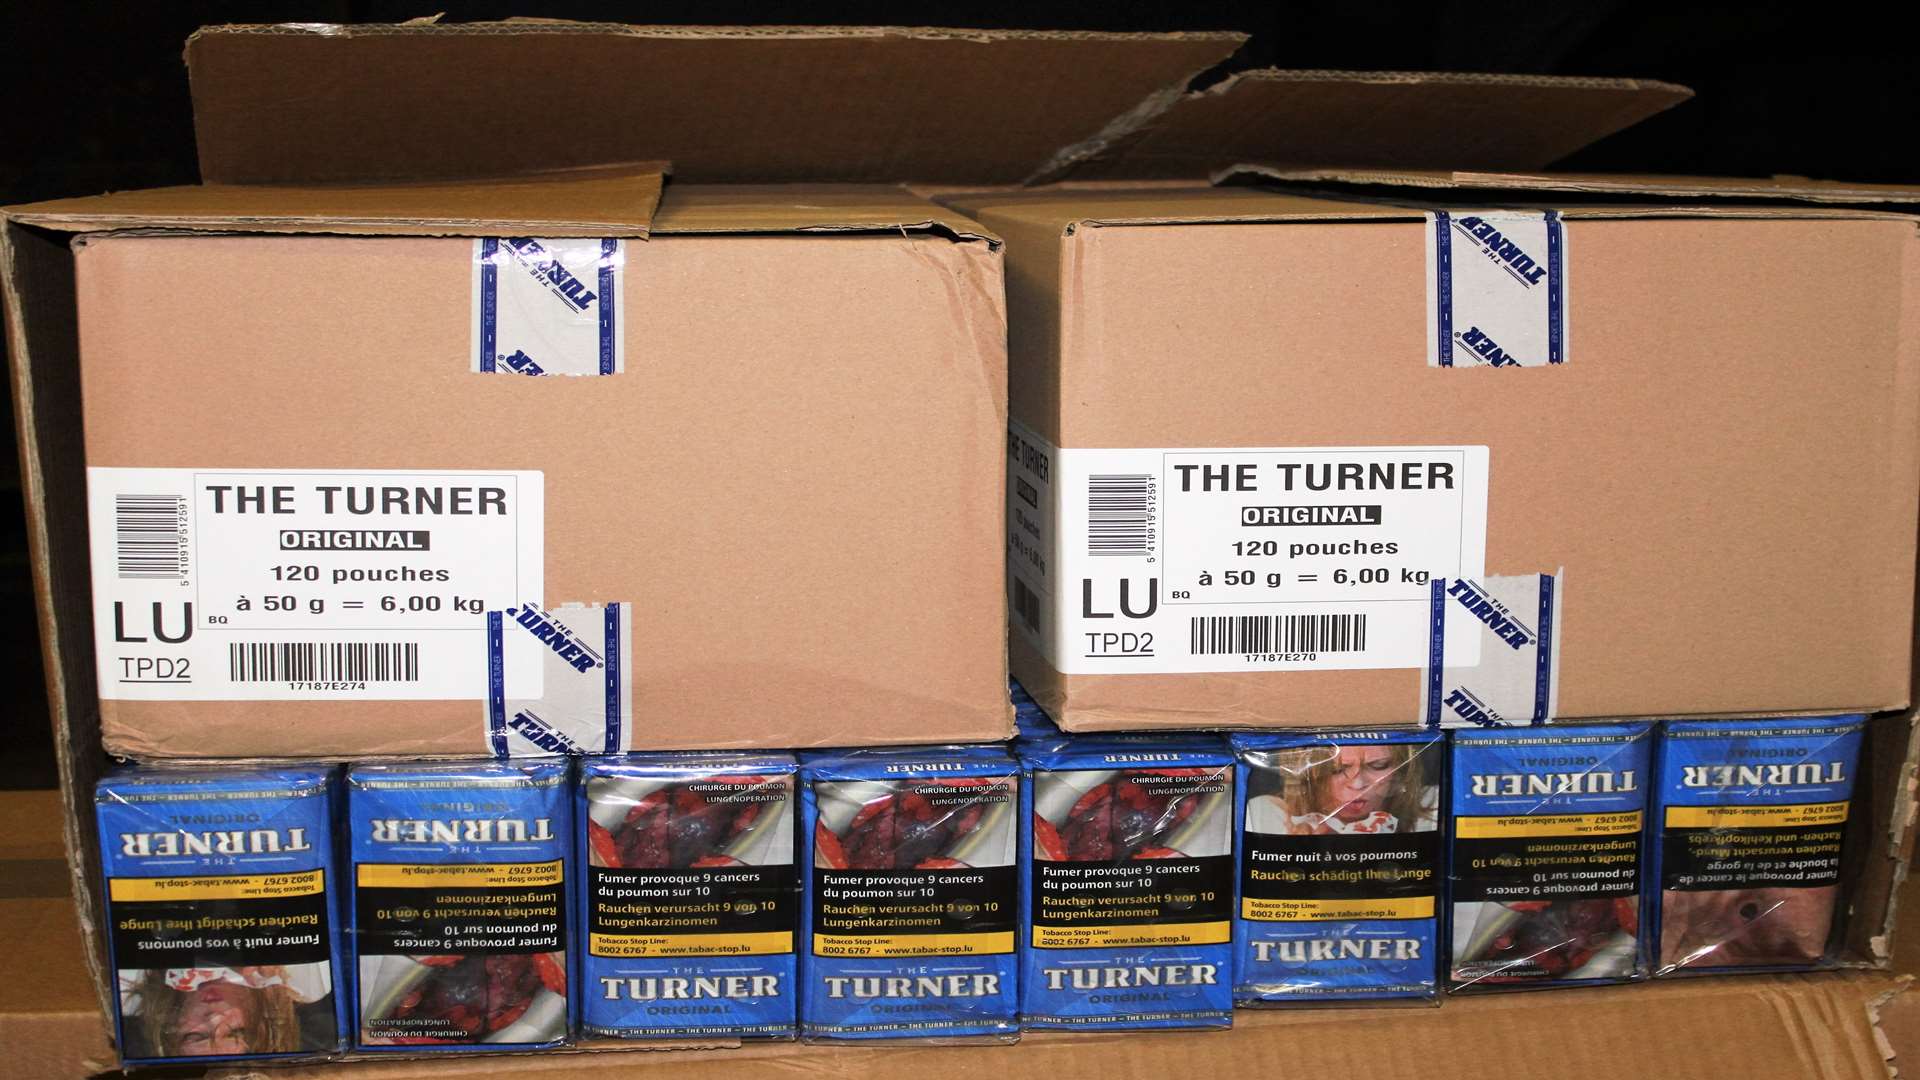 Smuggled Turner tobacco